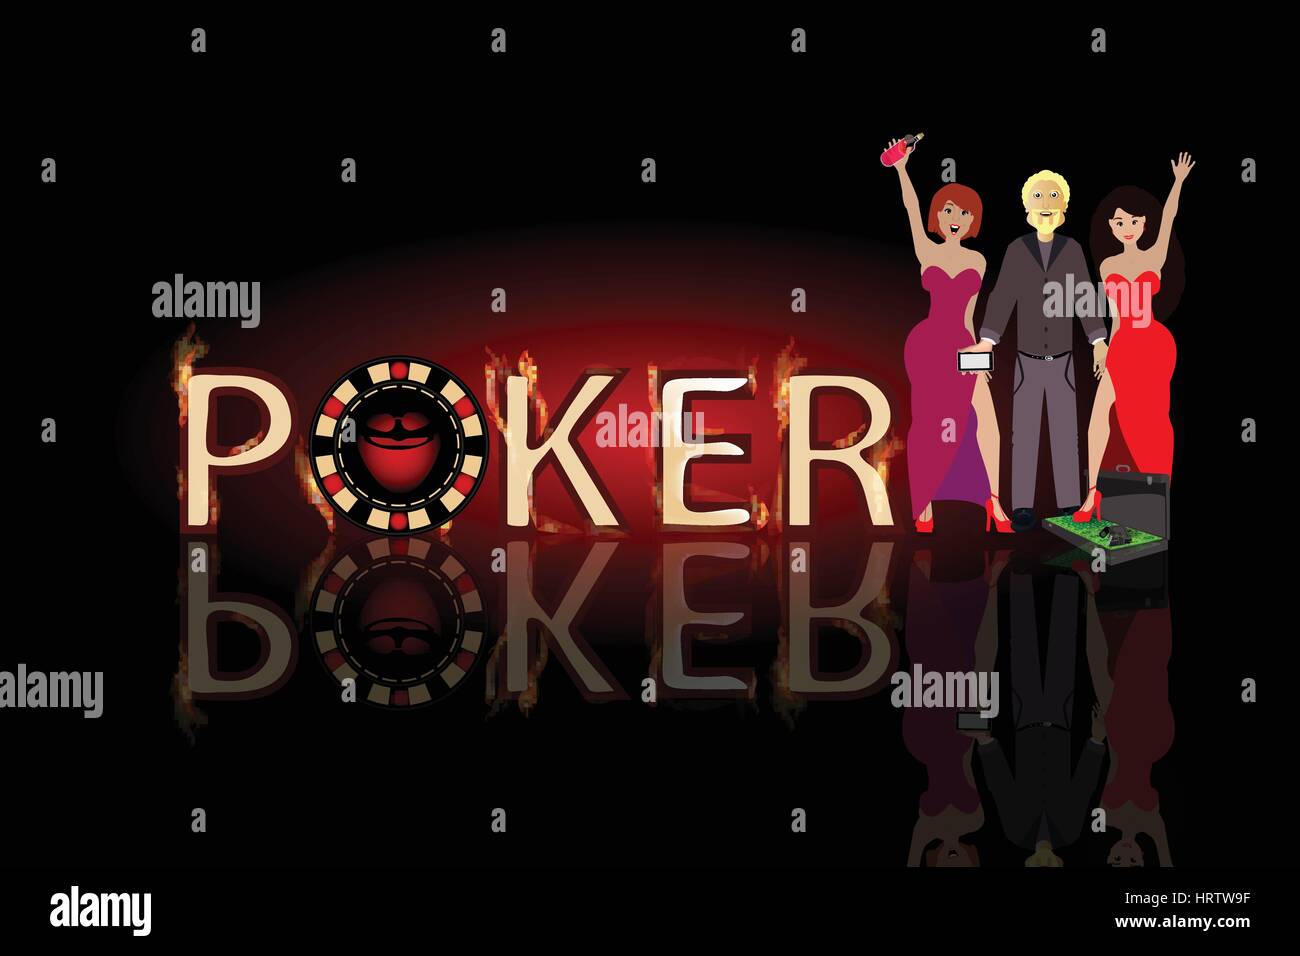 Poker-Gewinne und das gewinnen. Konzept der Finanzierung. Abbildung. Verwenden Sie ein Smartphone, Website, Druck, Dekoration etc. Stock Vektor